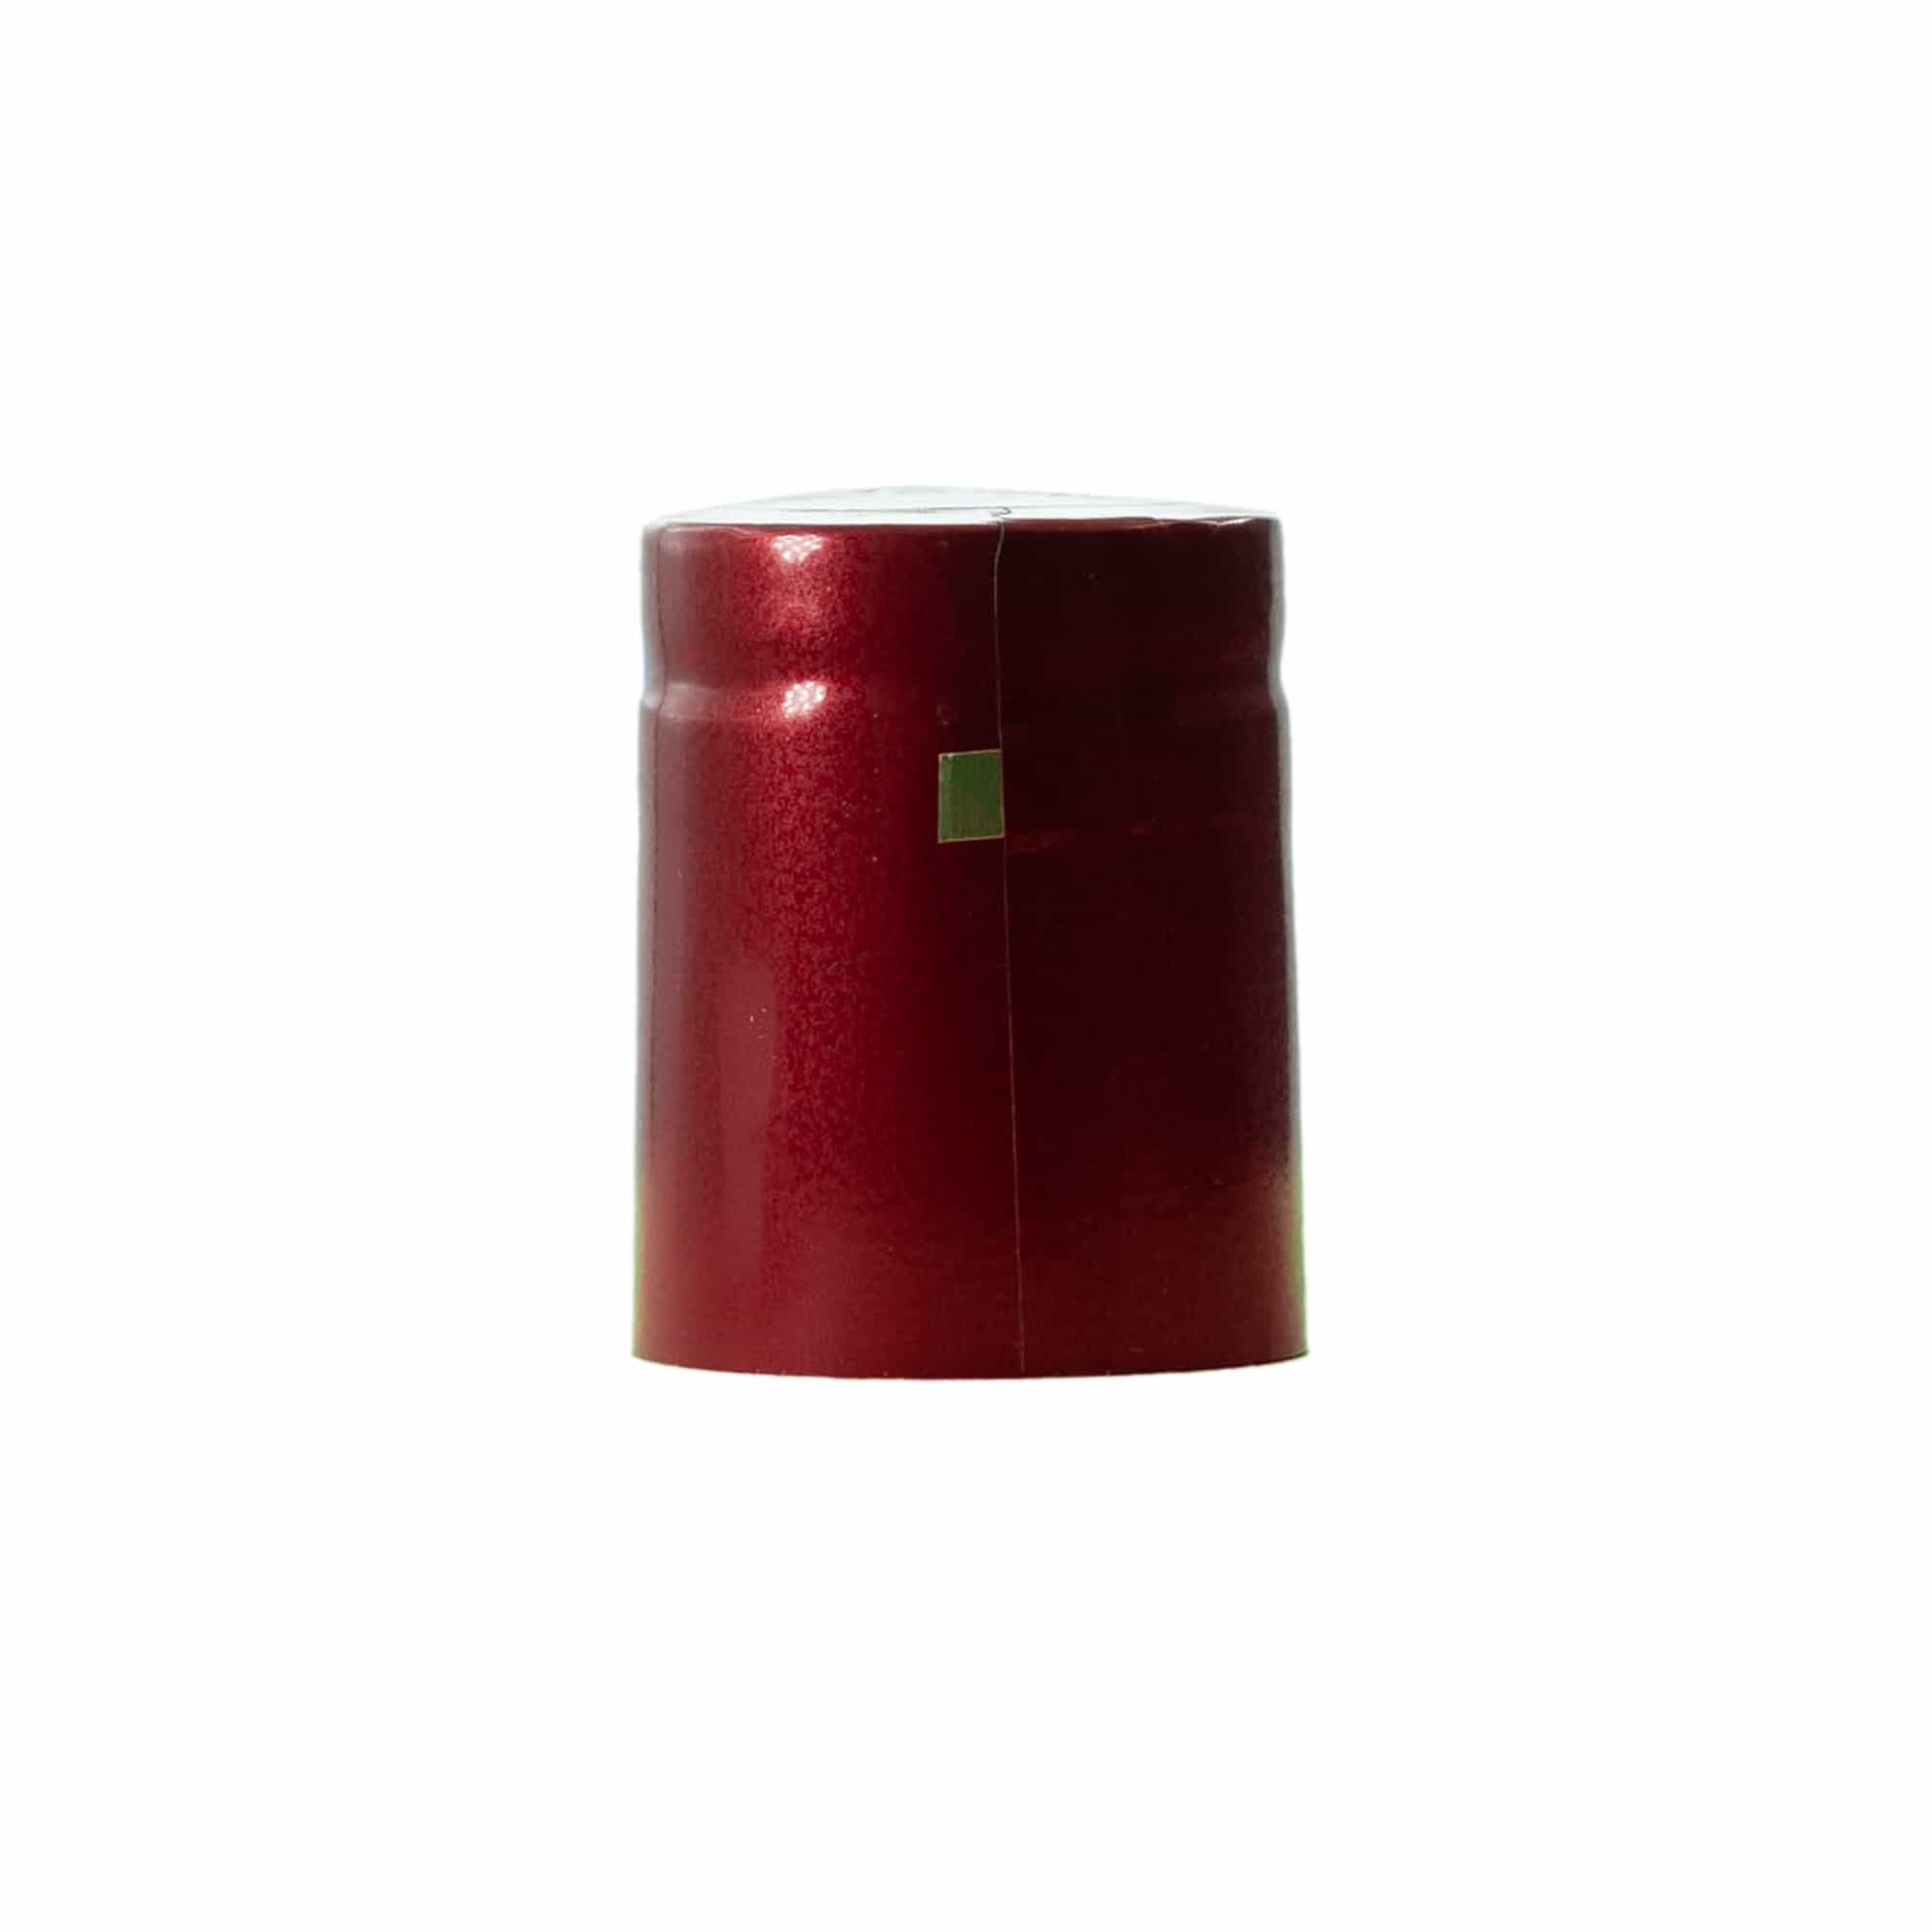 Kapturek termokurczliwy 32x41, tworzywo sztuczne PVC, kolor czerwonego wina